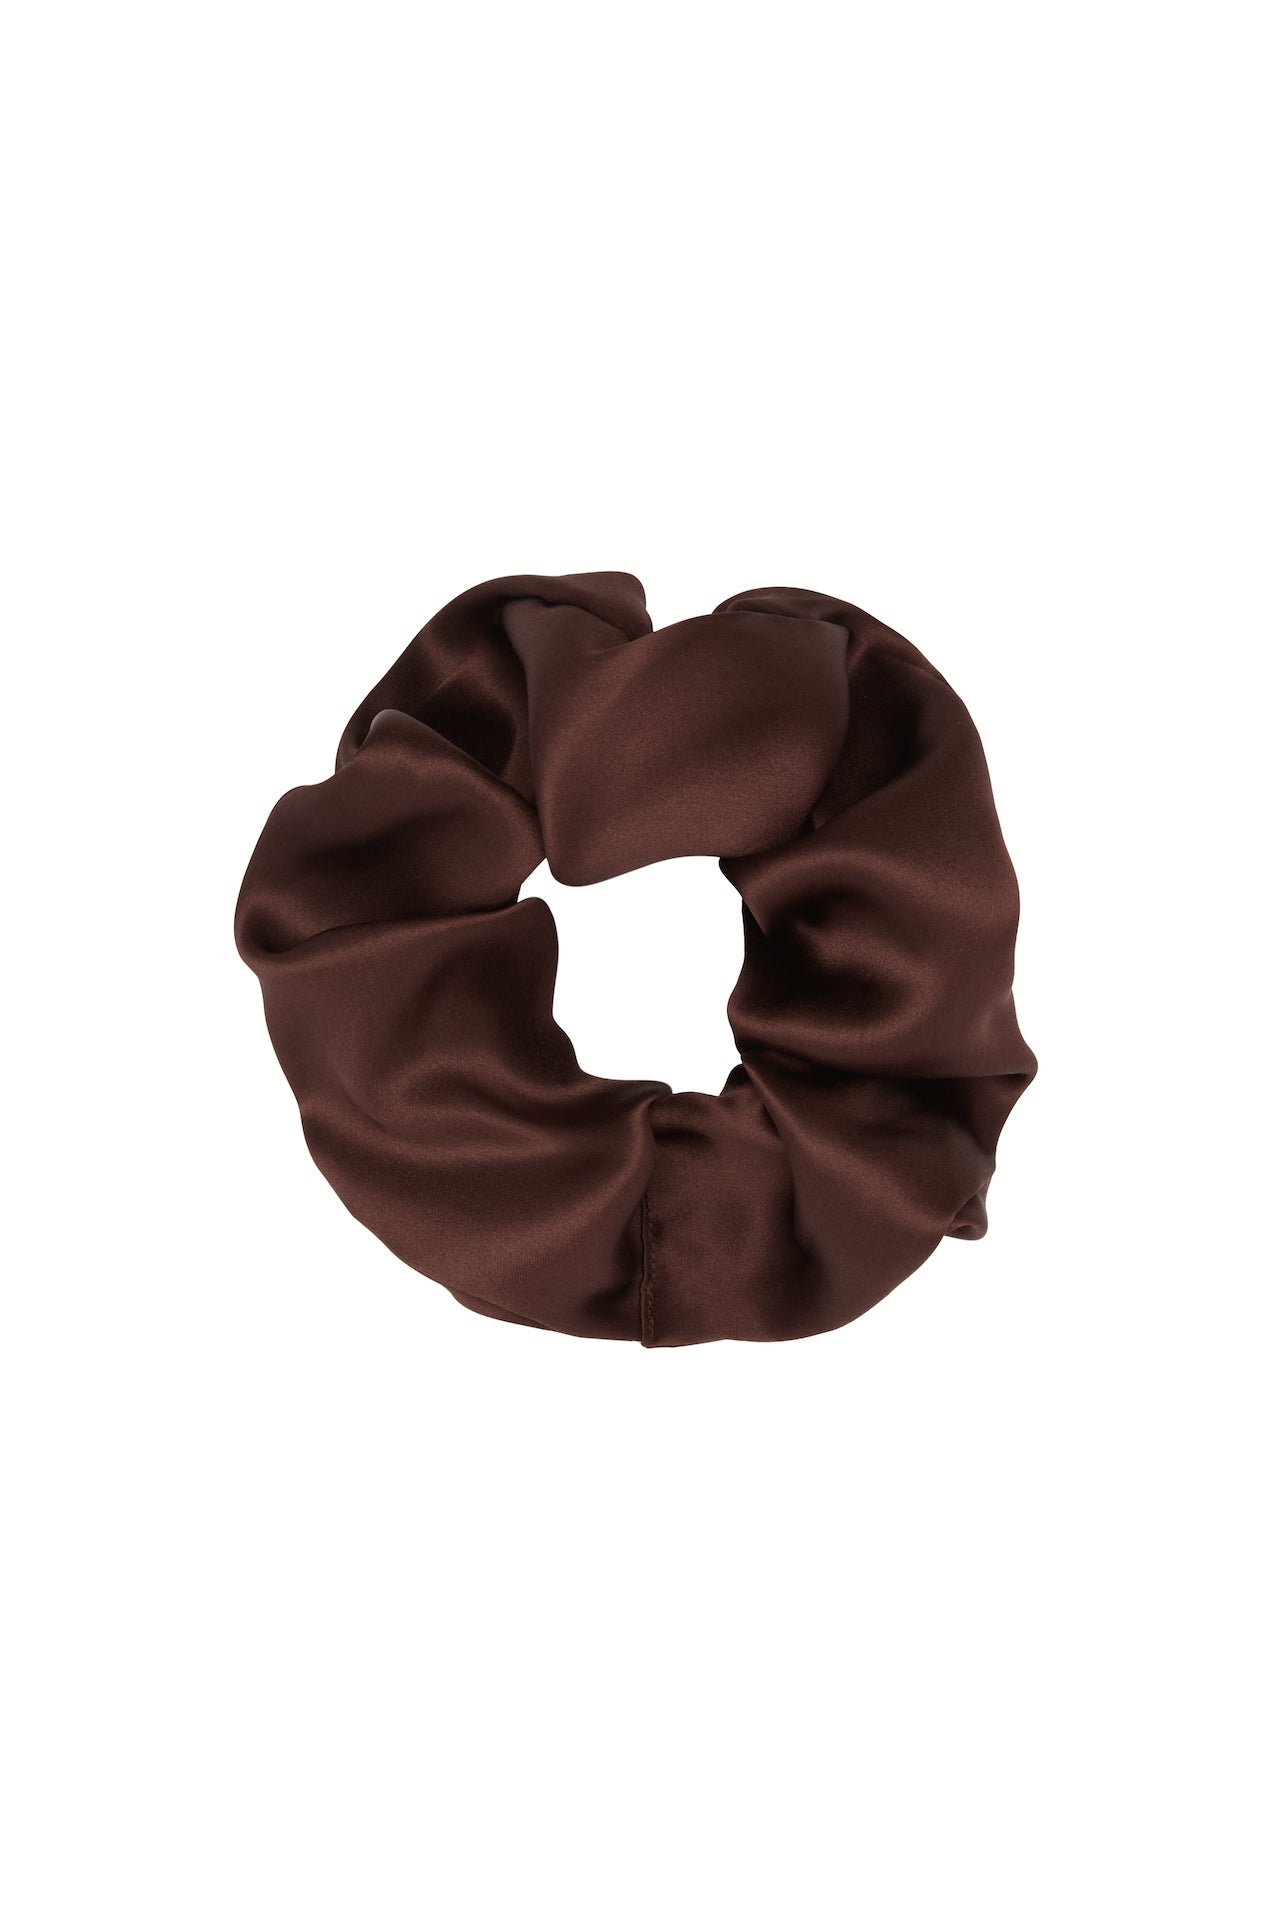 SAINT silk hair tie scrunchie in chocolate brown pure silk. made in Australia. 100% silk satin